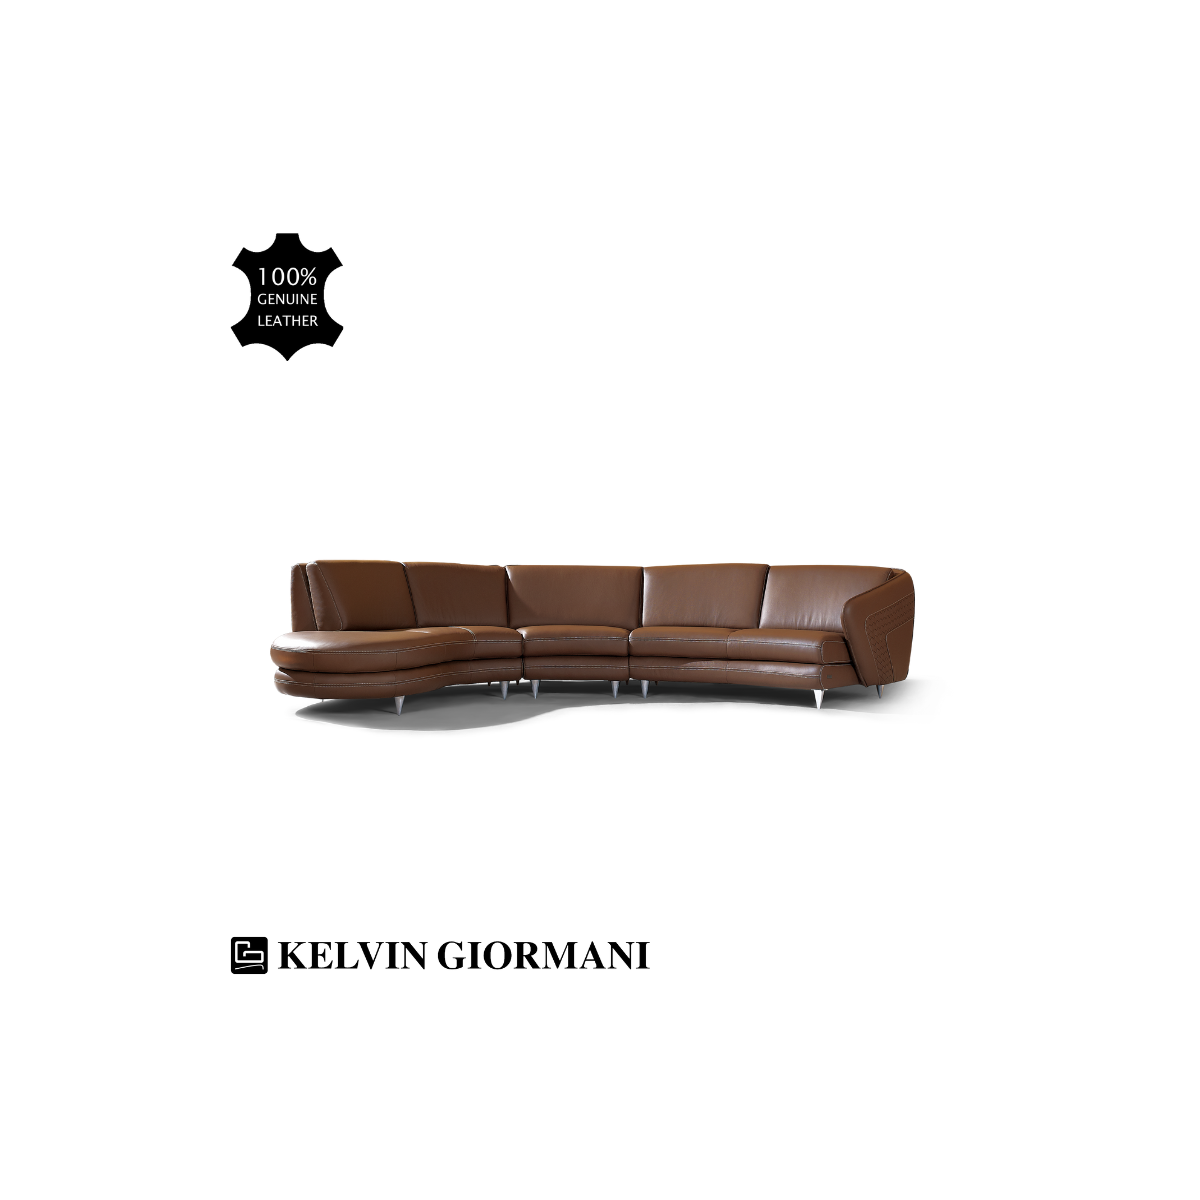 Freccia Leather Sofa